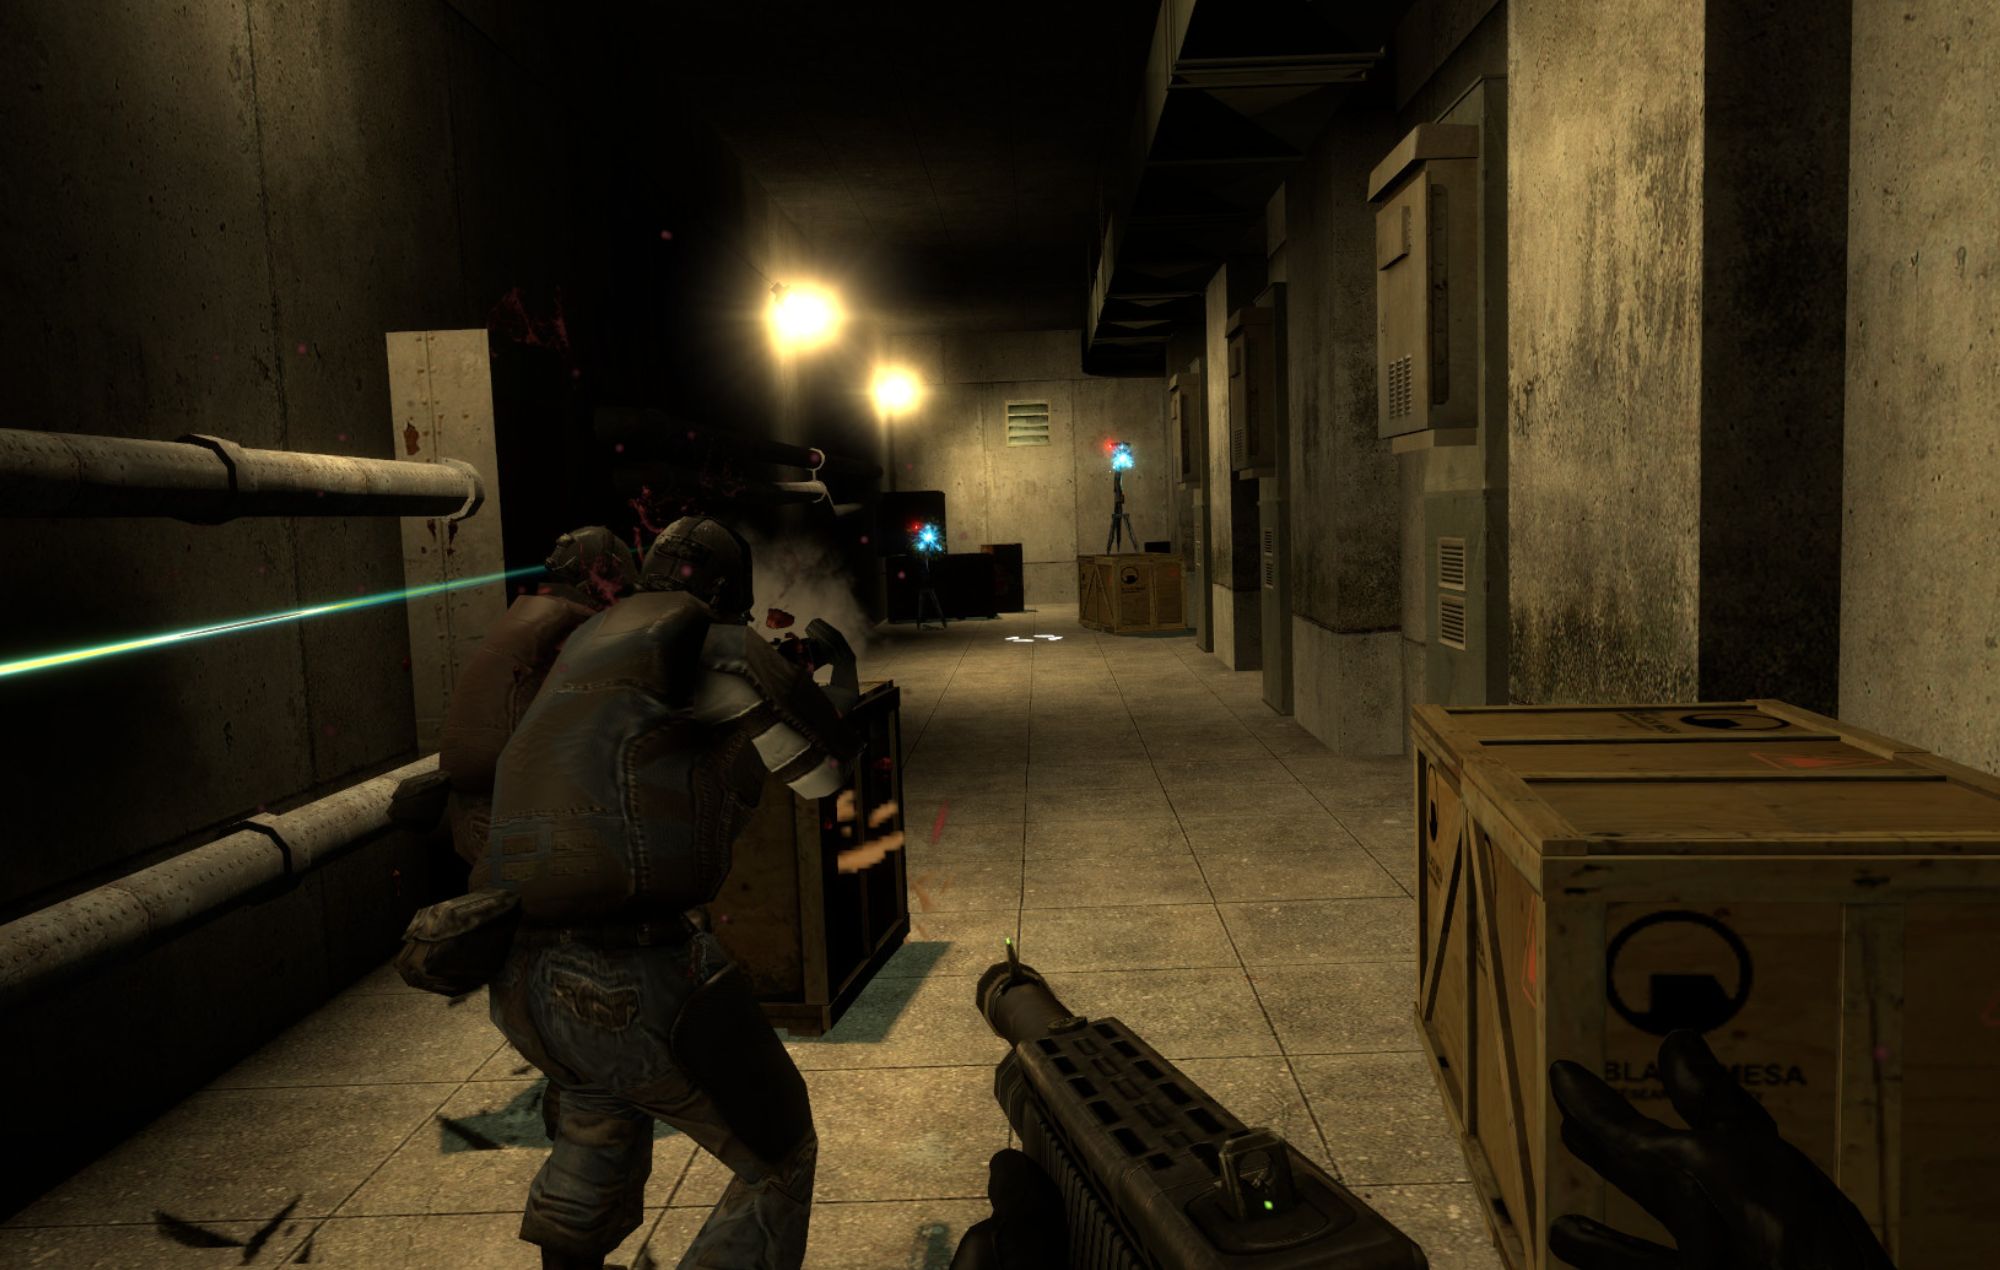 El mod de voz de 'Half-Life 2' te pone al mando de un equipo Combine